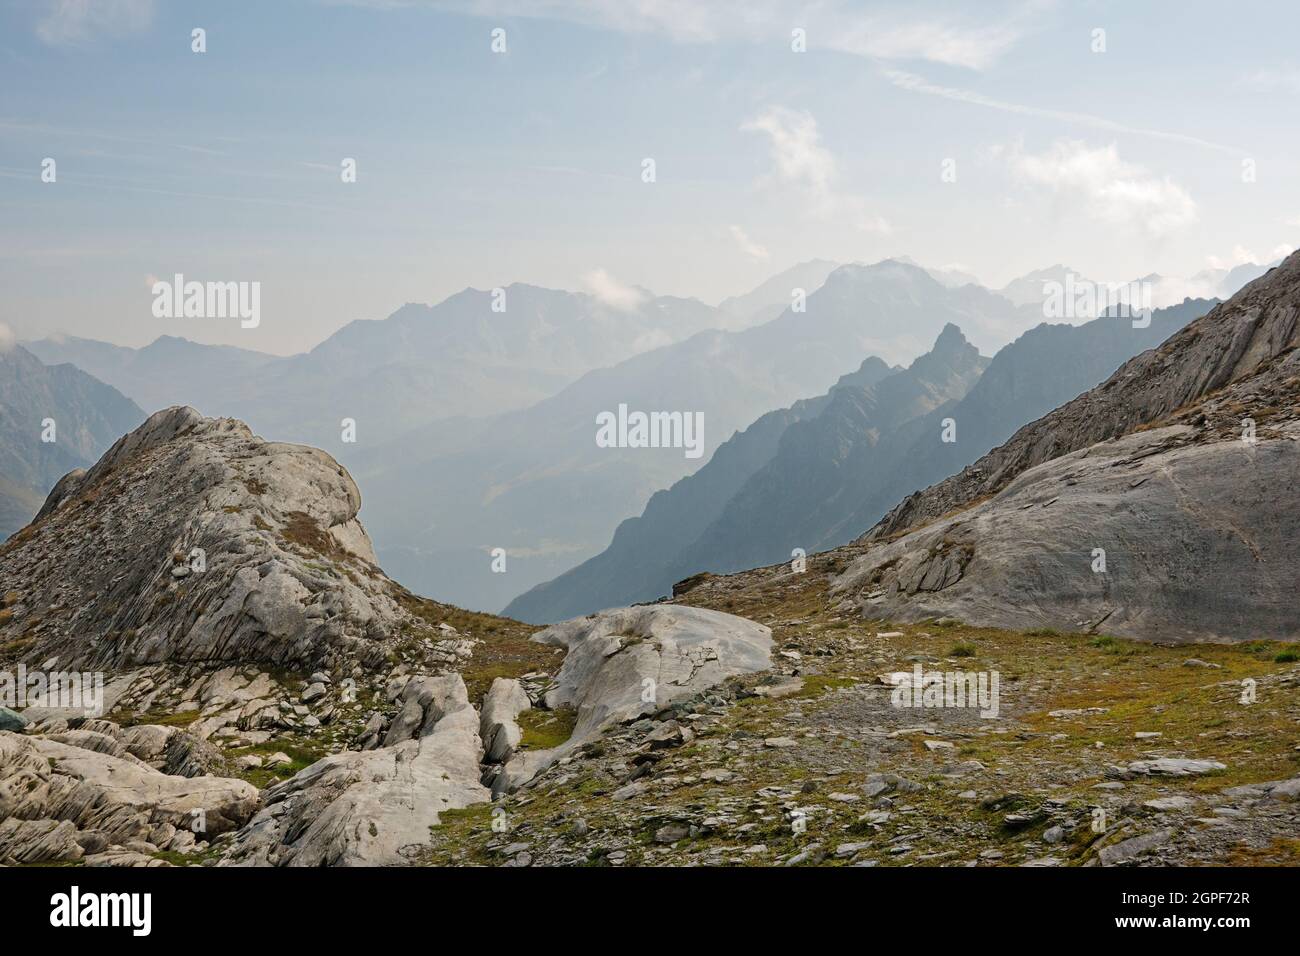 Paysage alpin dans lequel les traces d'un glacier disparu depuis longtemps sont encore visibles à travers les rochers arrondis Banque D'Images